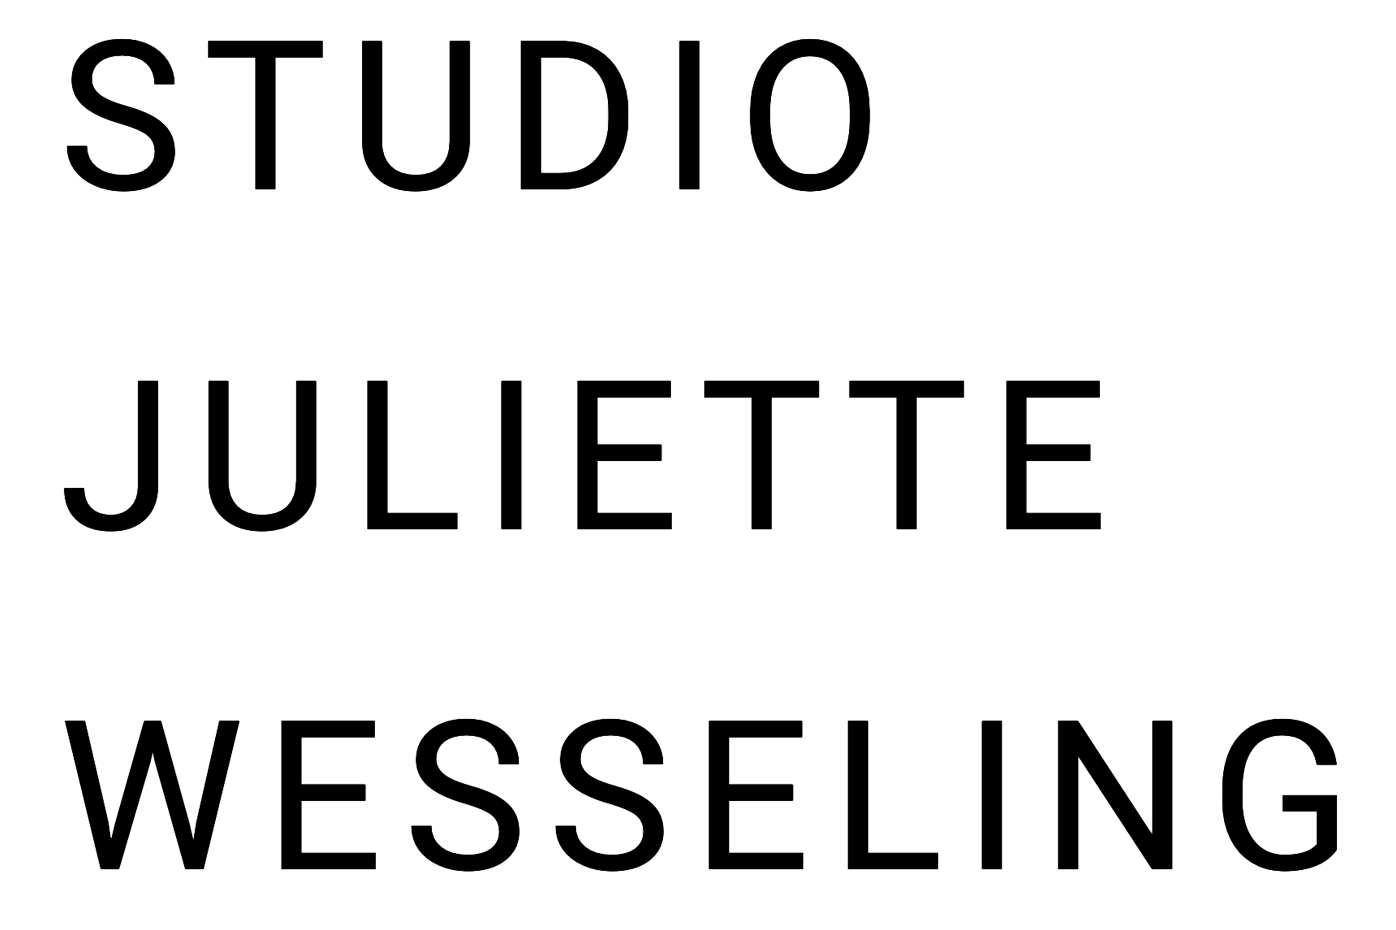 STUDIO JULIETTE WESSELING